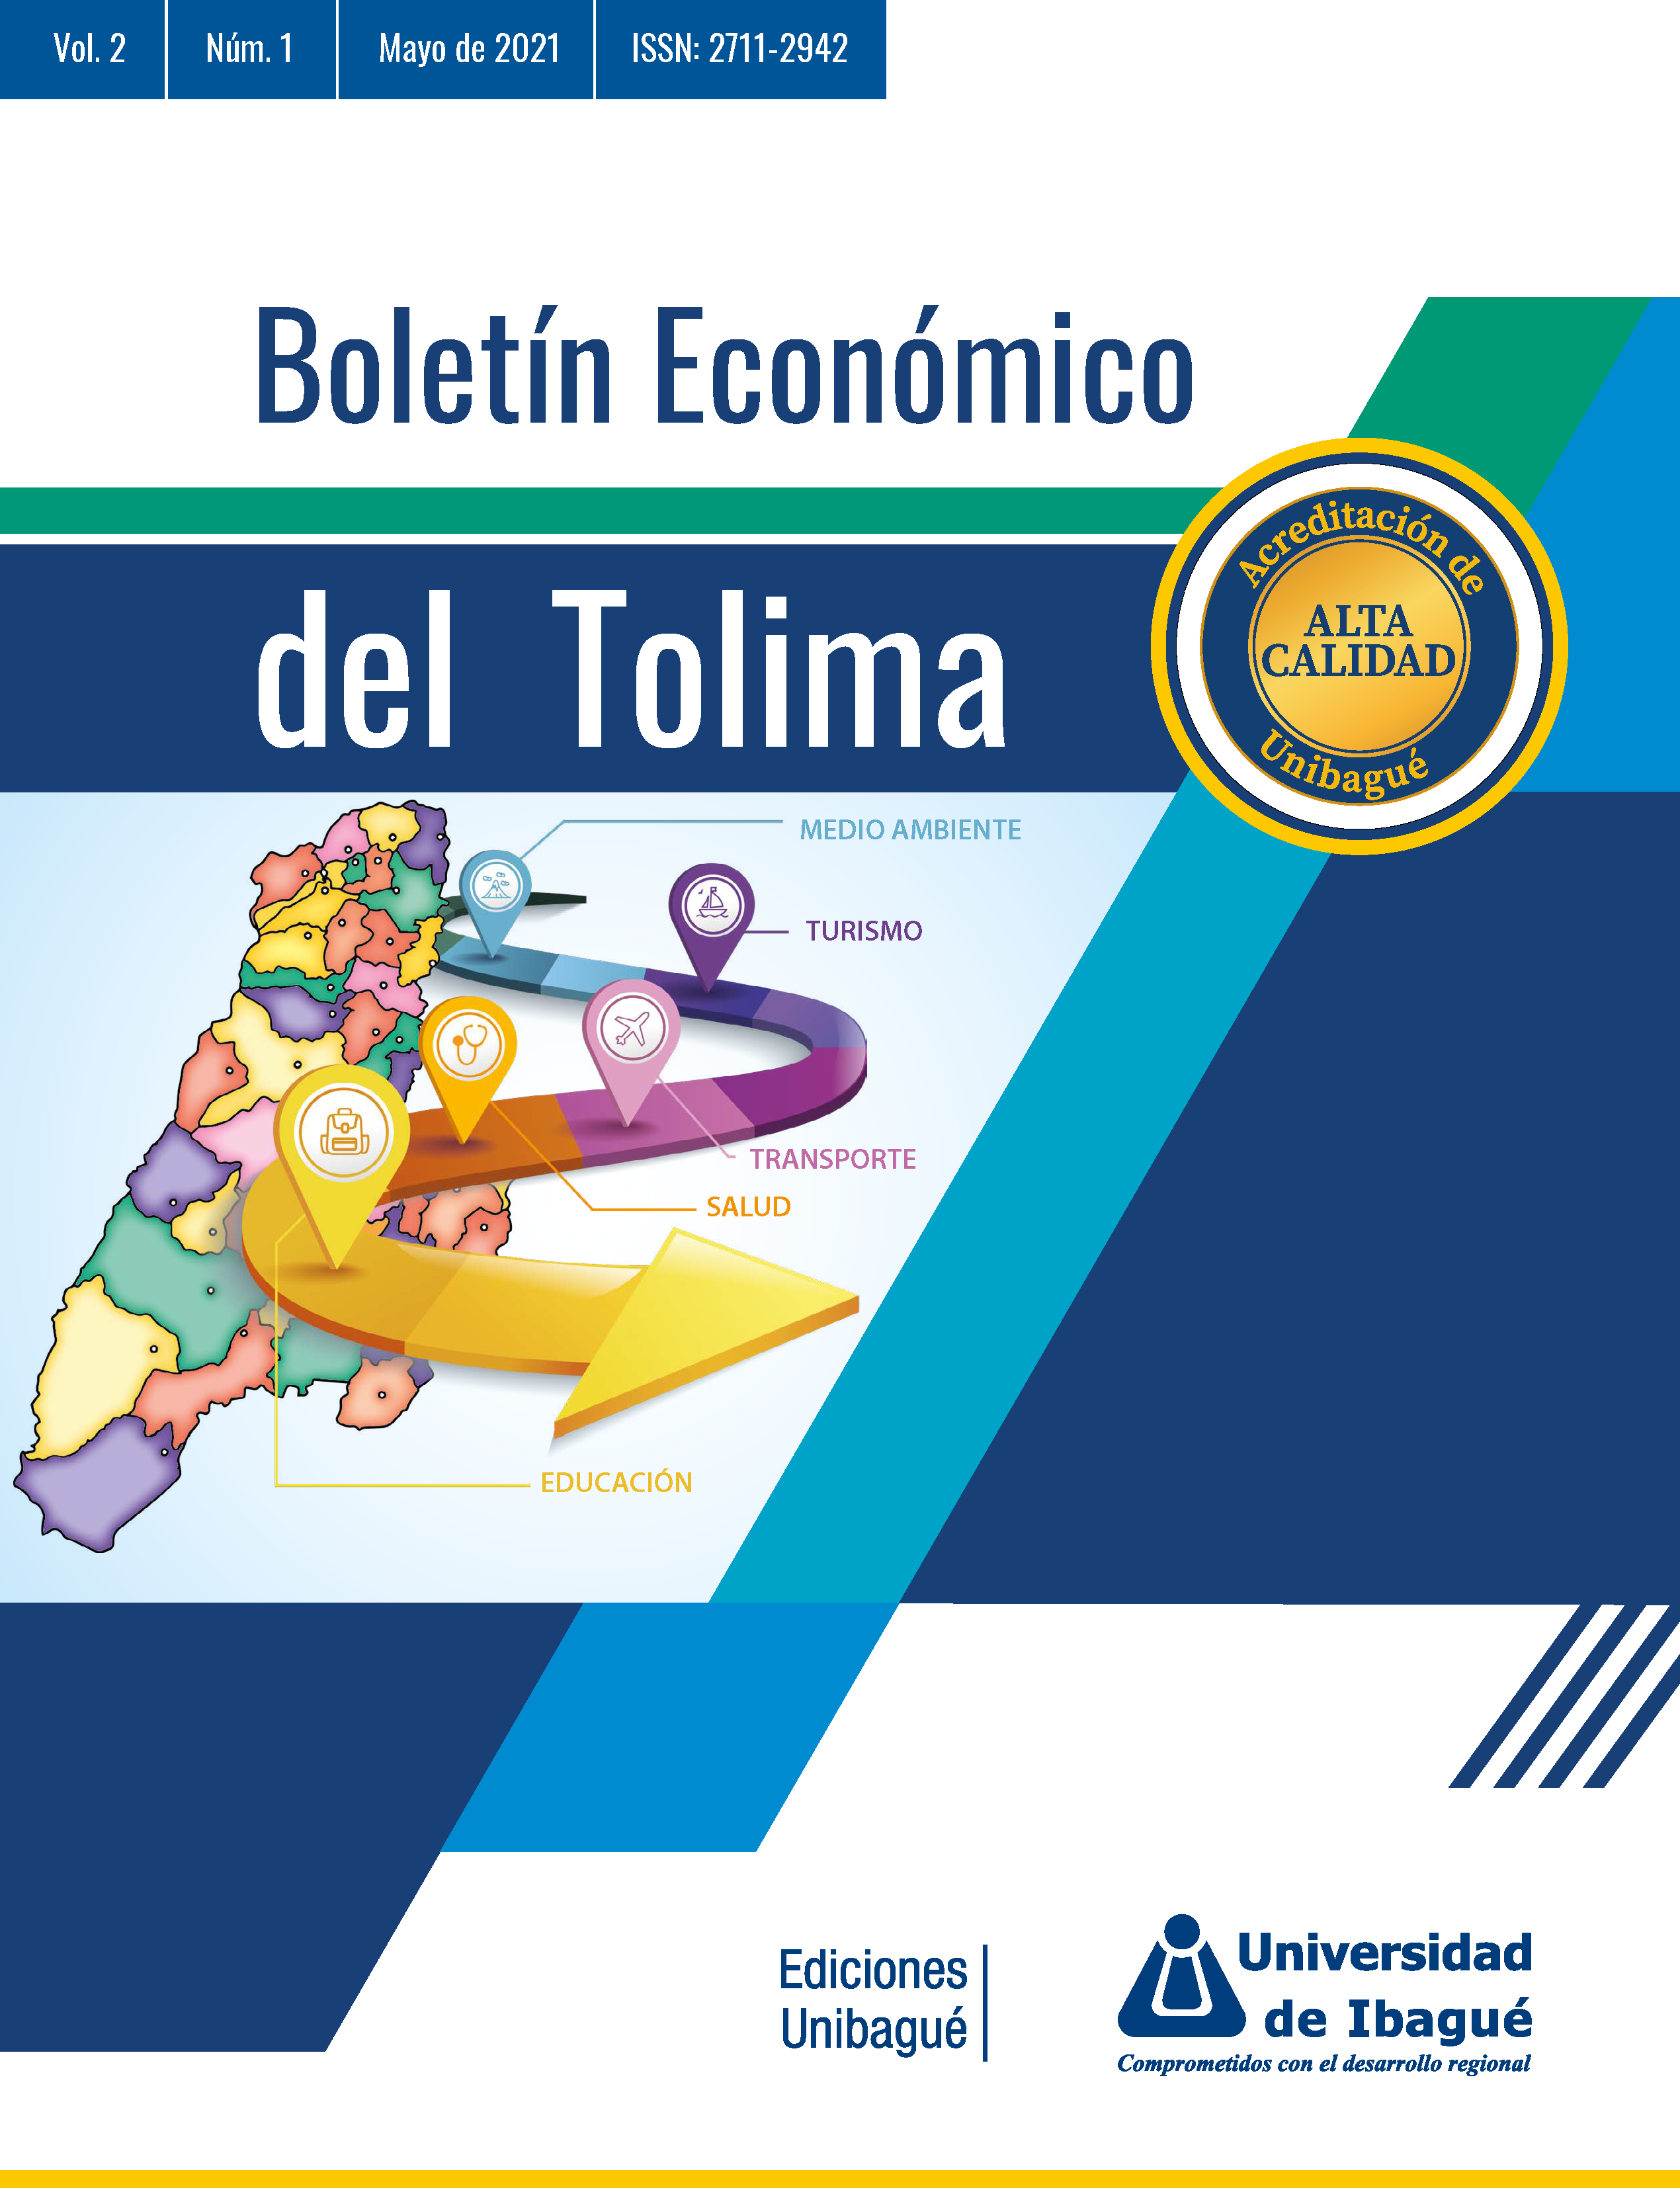 Cover of Boletín Económico del Tolima